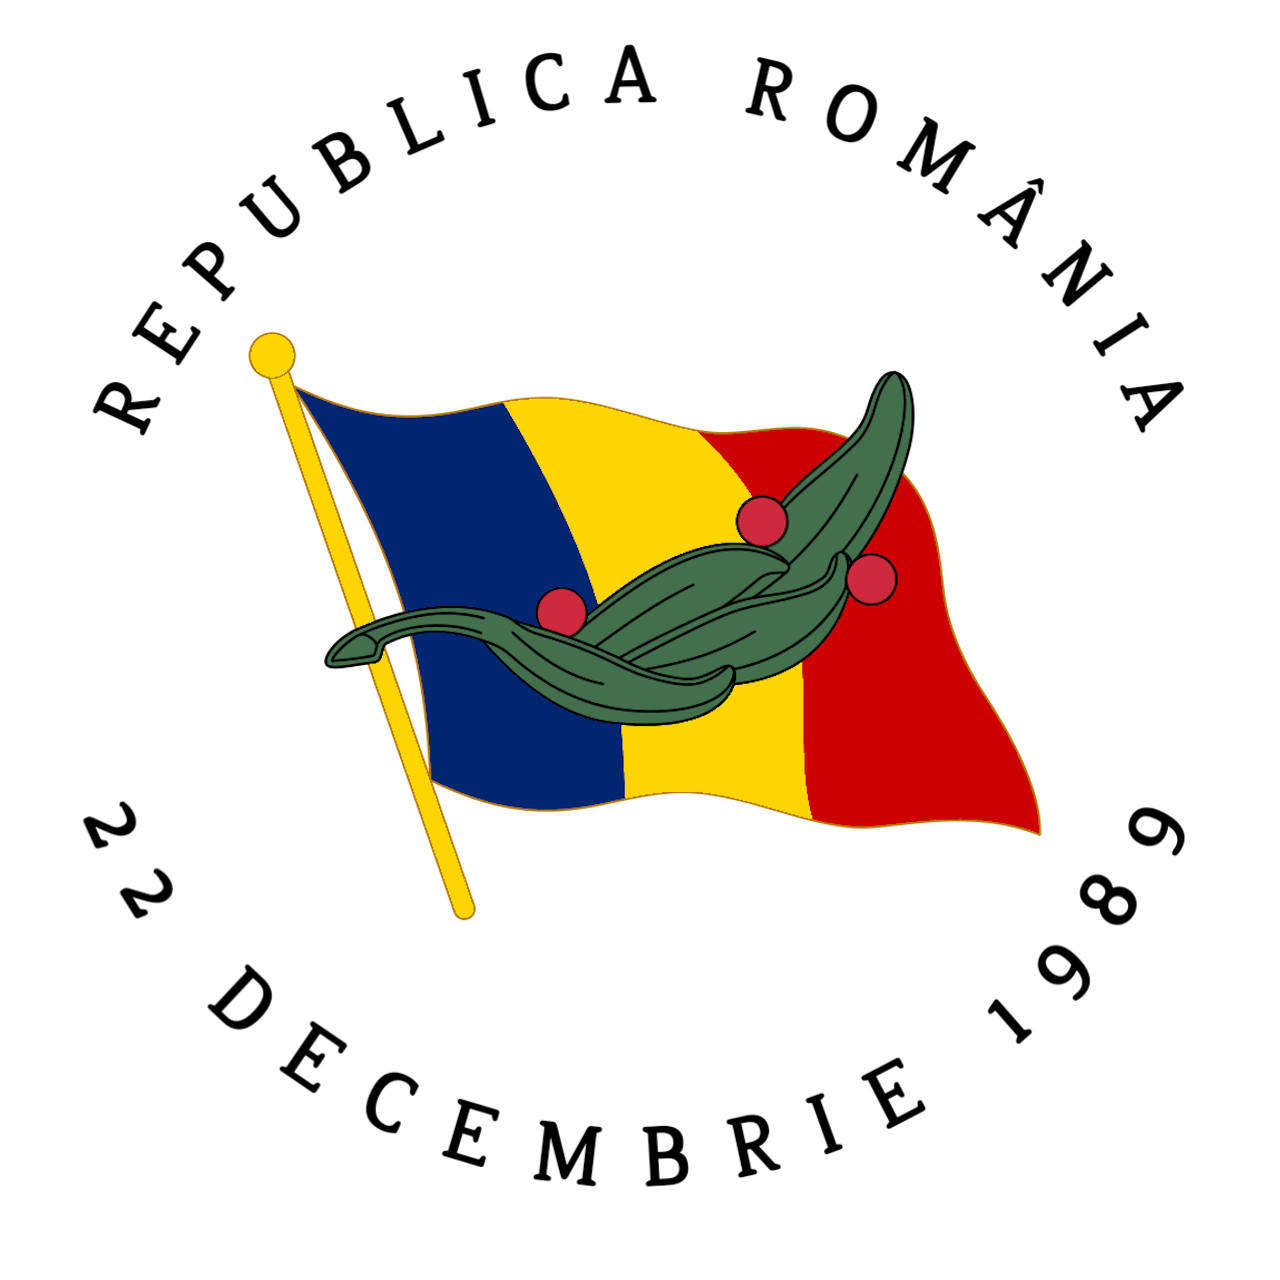 Alternate Flag of Russia (1991-1993) by MoldaviaballGeneral on DeviantArt